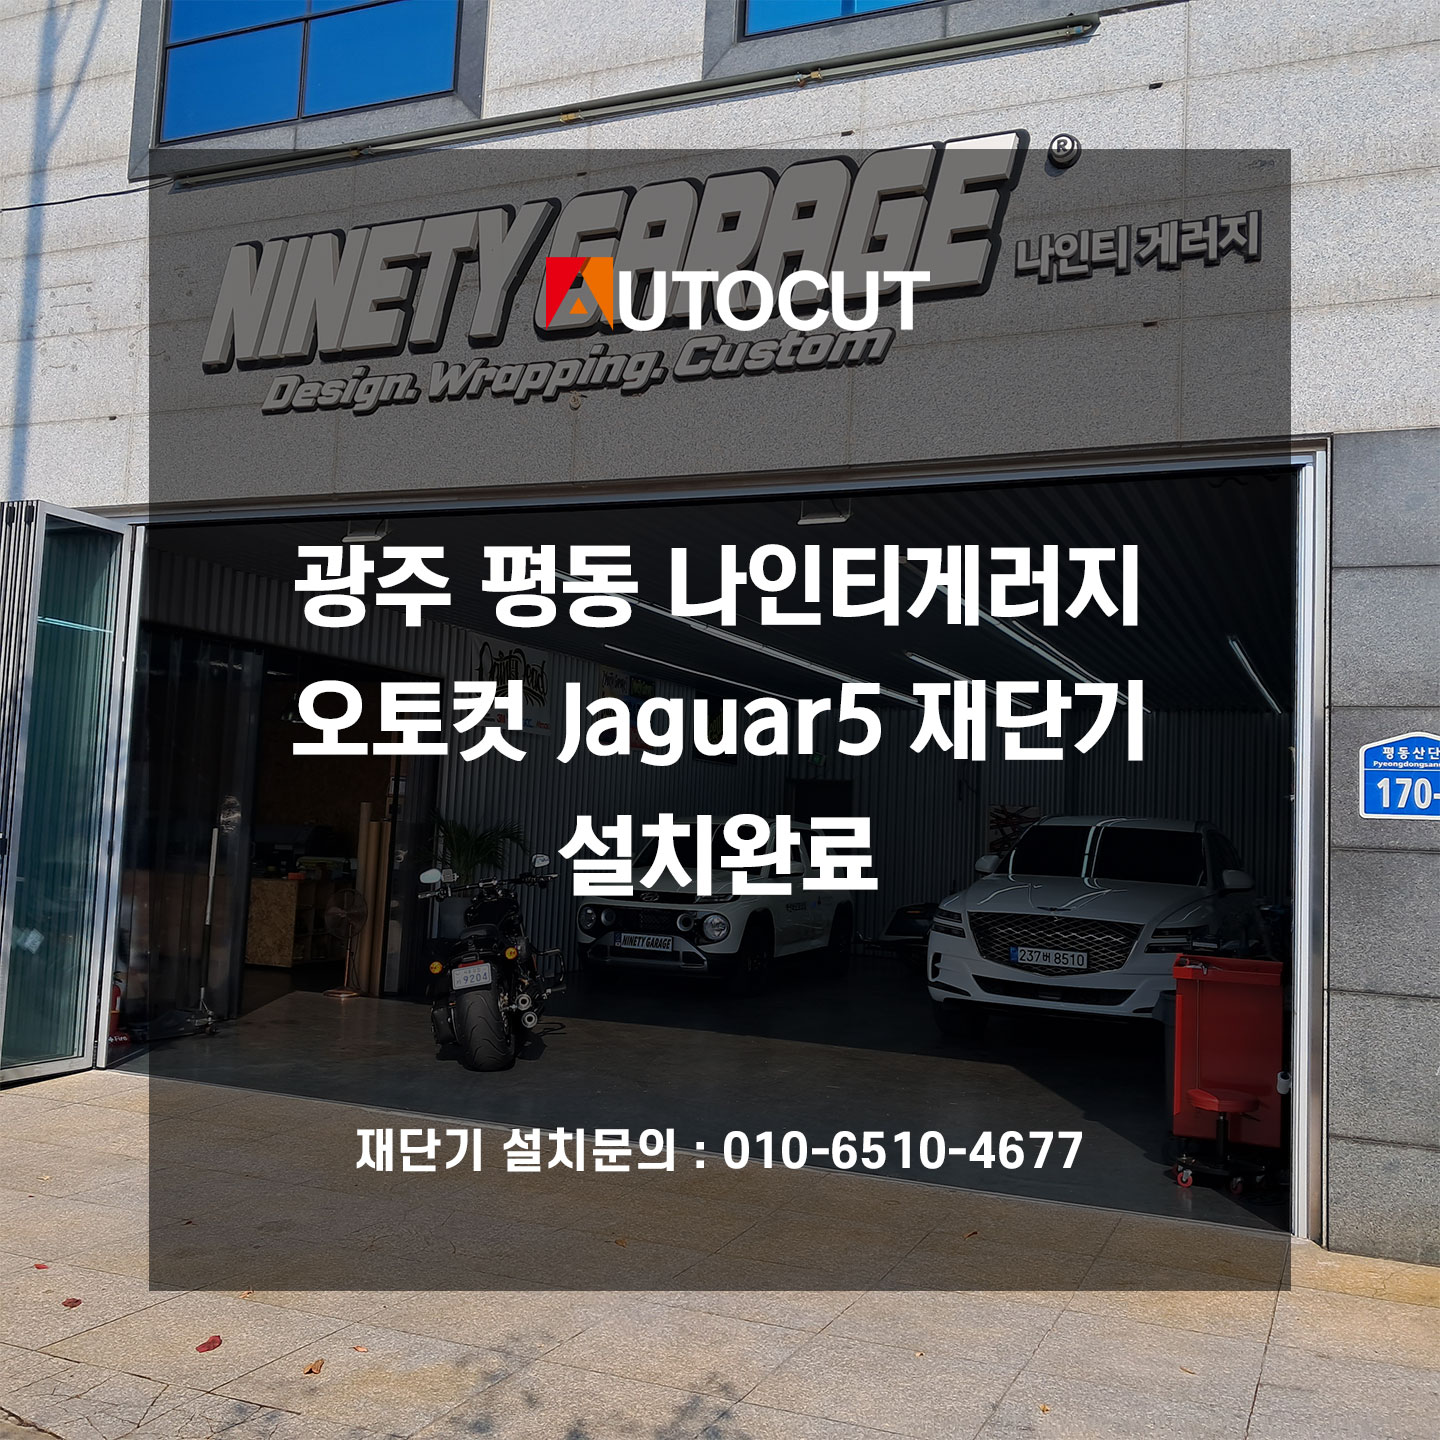 광주 평동 나인티게러지 Jaguar5 재단기 설치완료 첨부파일 : 1695704951.jpg